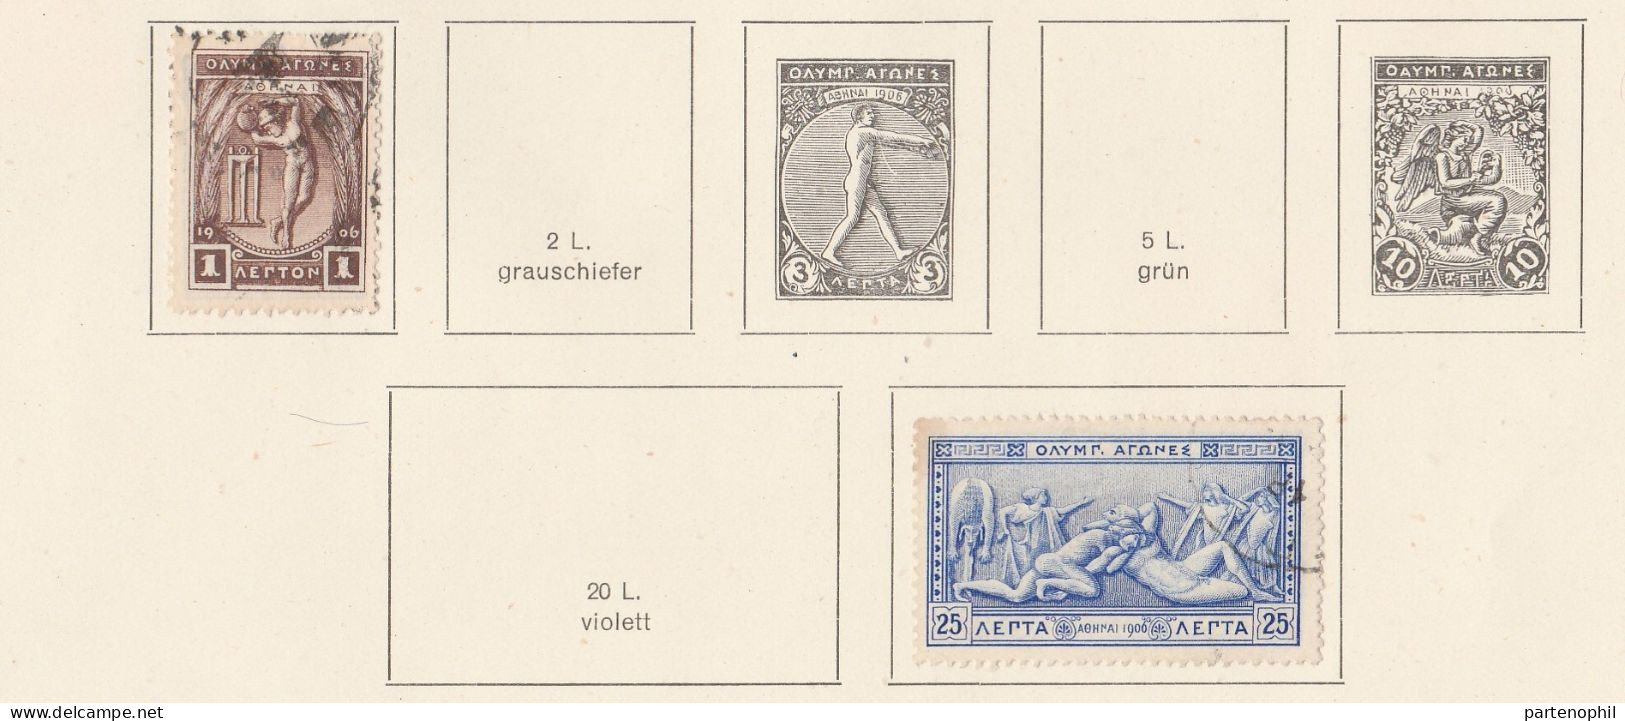 685 - Greece Grecia 1876/1927 - Inizio di collezione di francobolli usati montata in fogli d’album, anche una piccola se